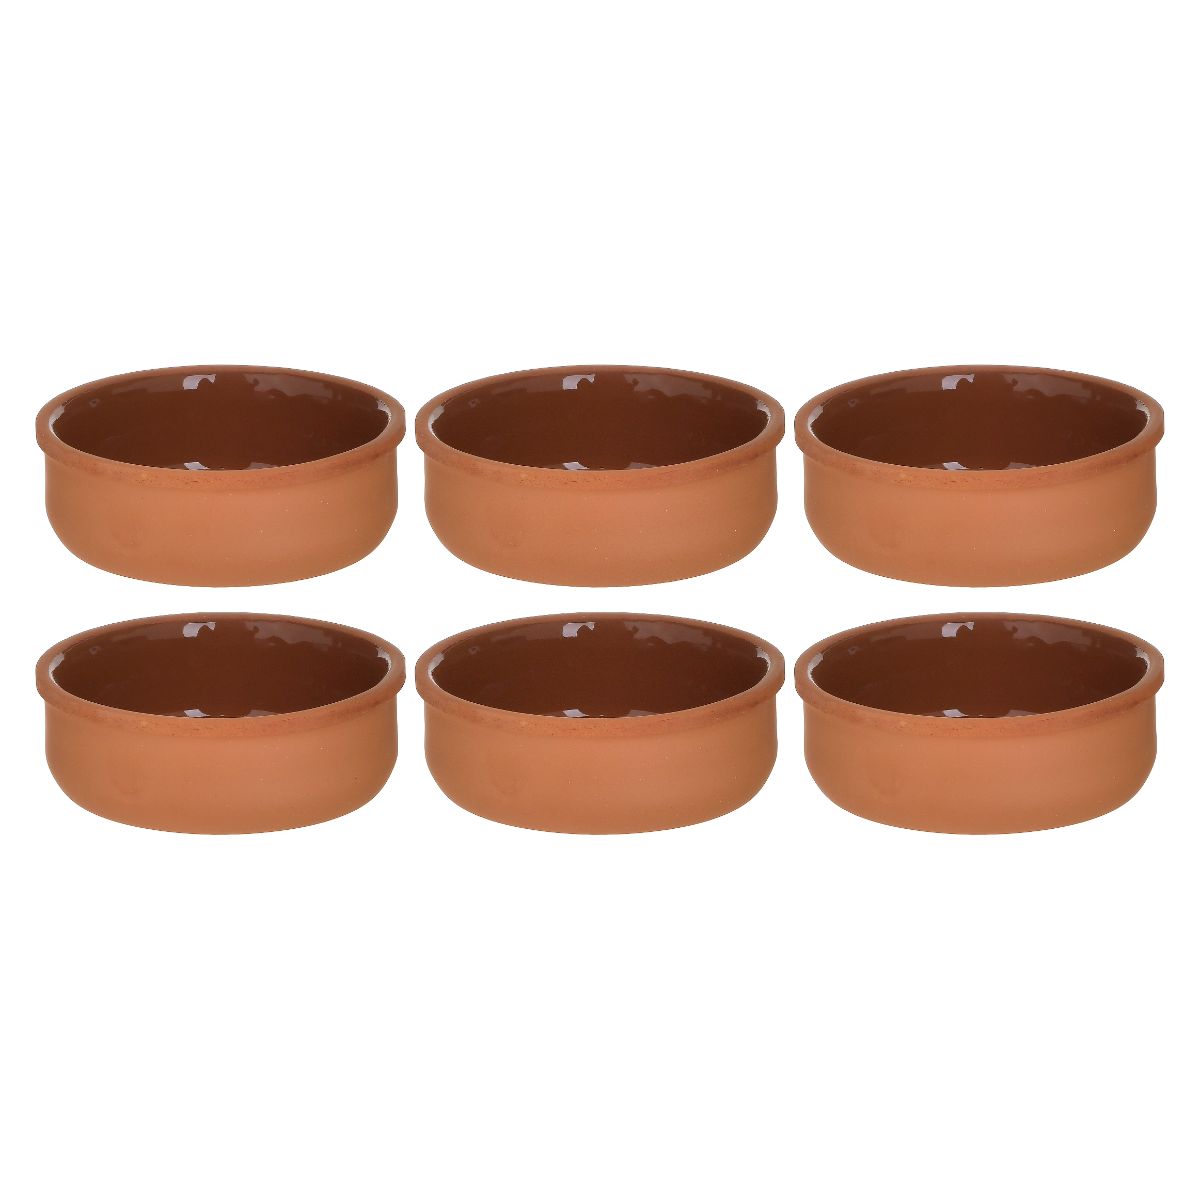 Bucatarie - Set 6 vase din ceramica pentru cuptor, 12x4 cm, hectarul.ro